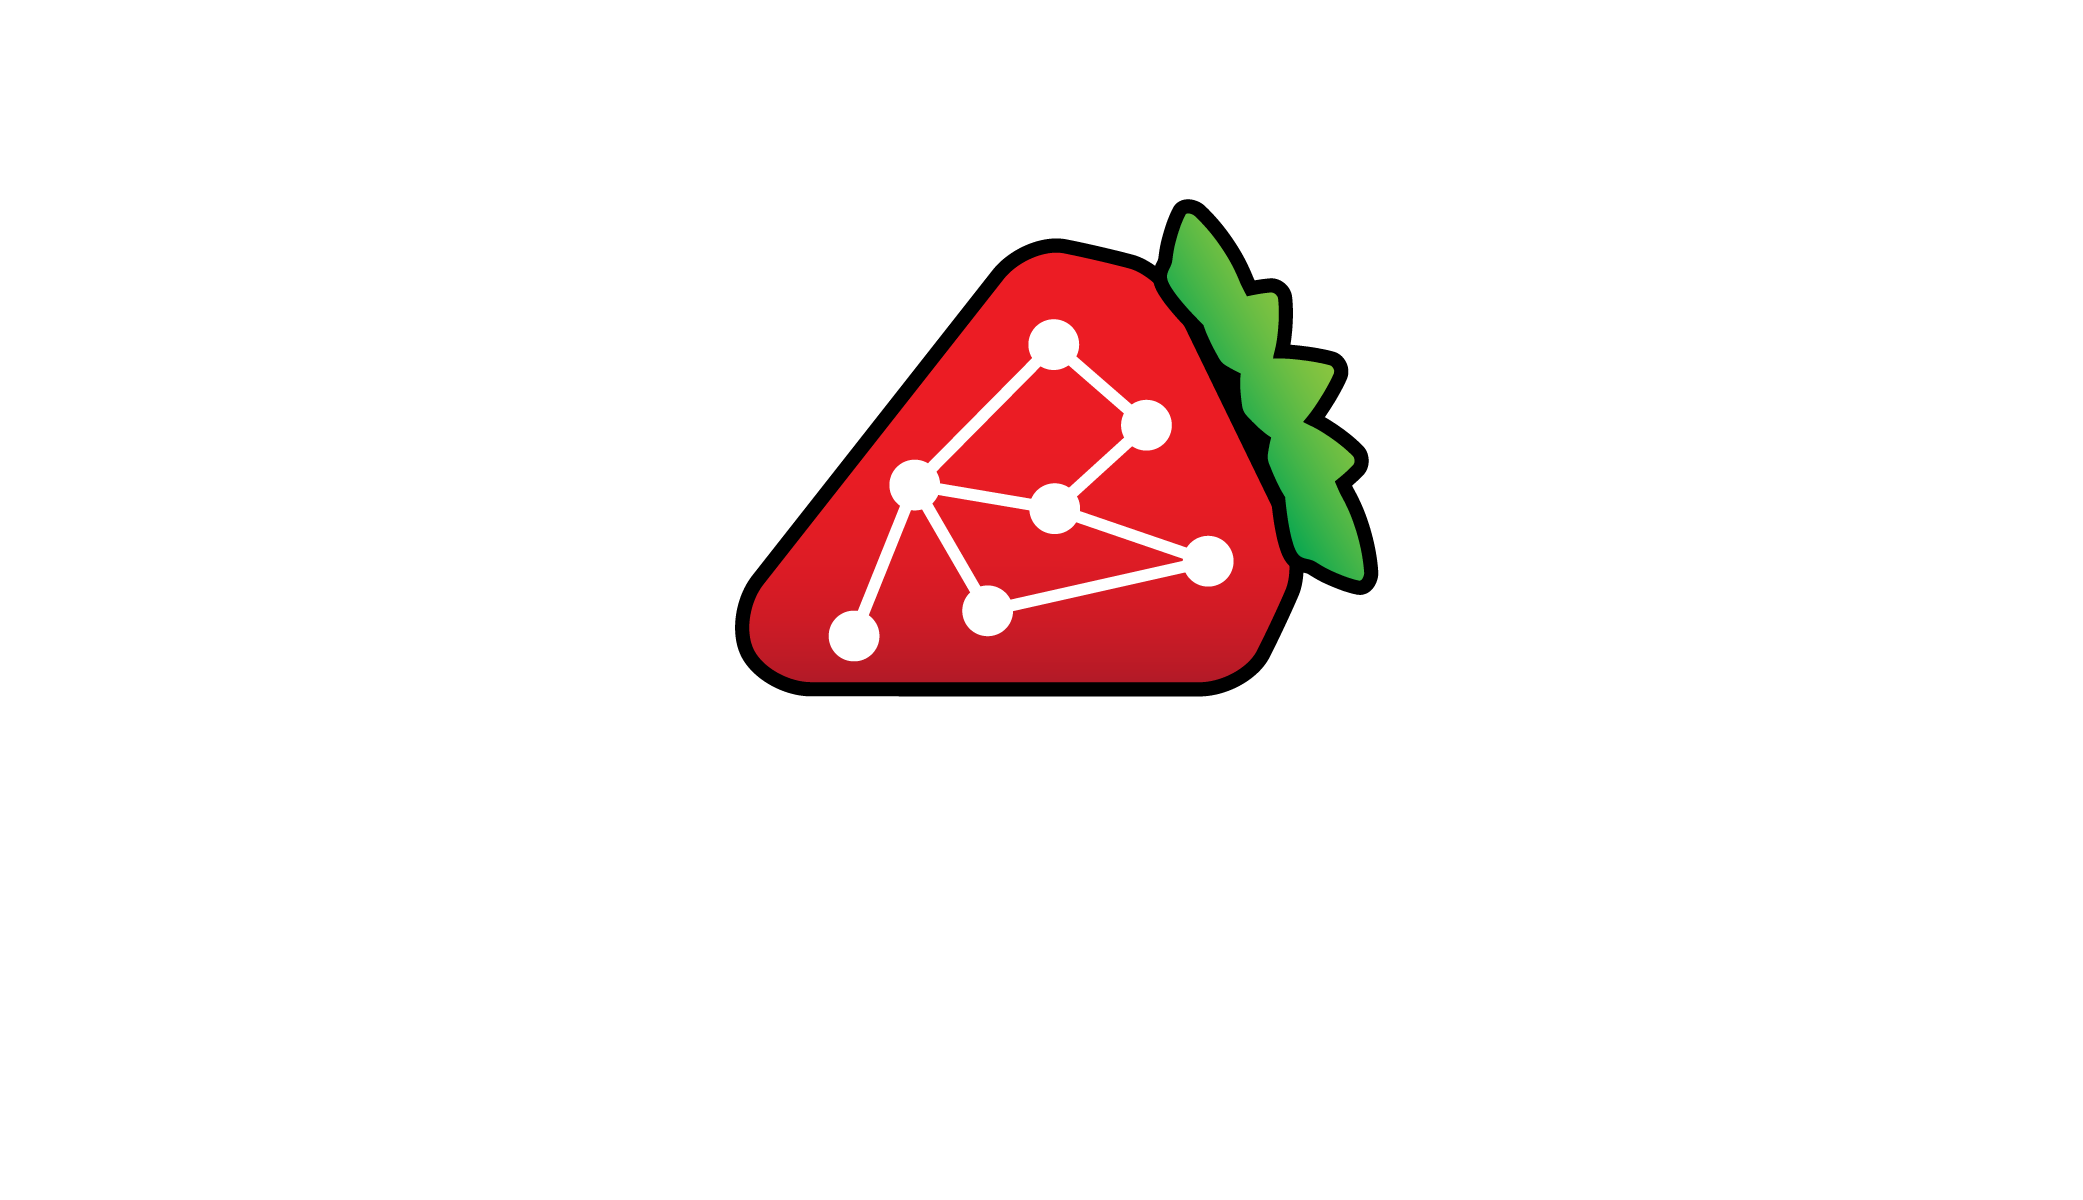 Senega